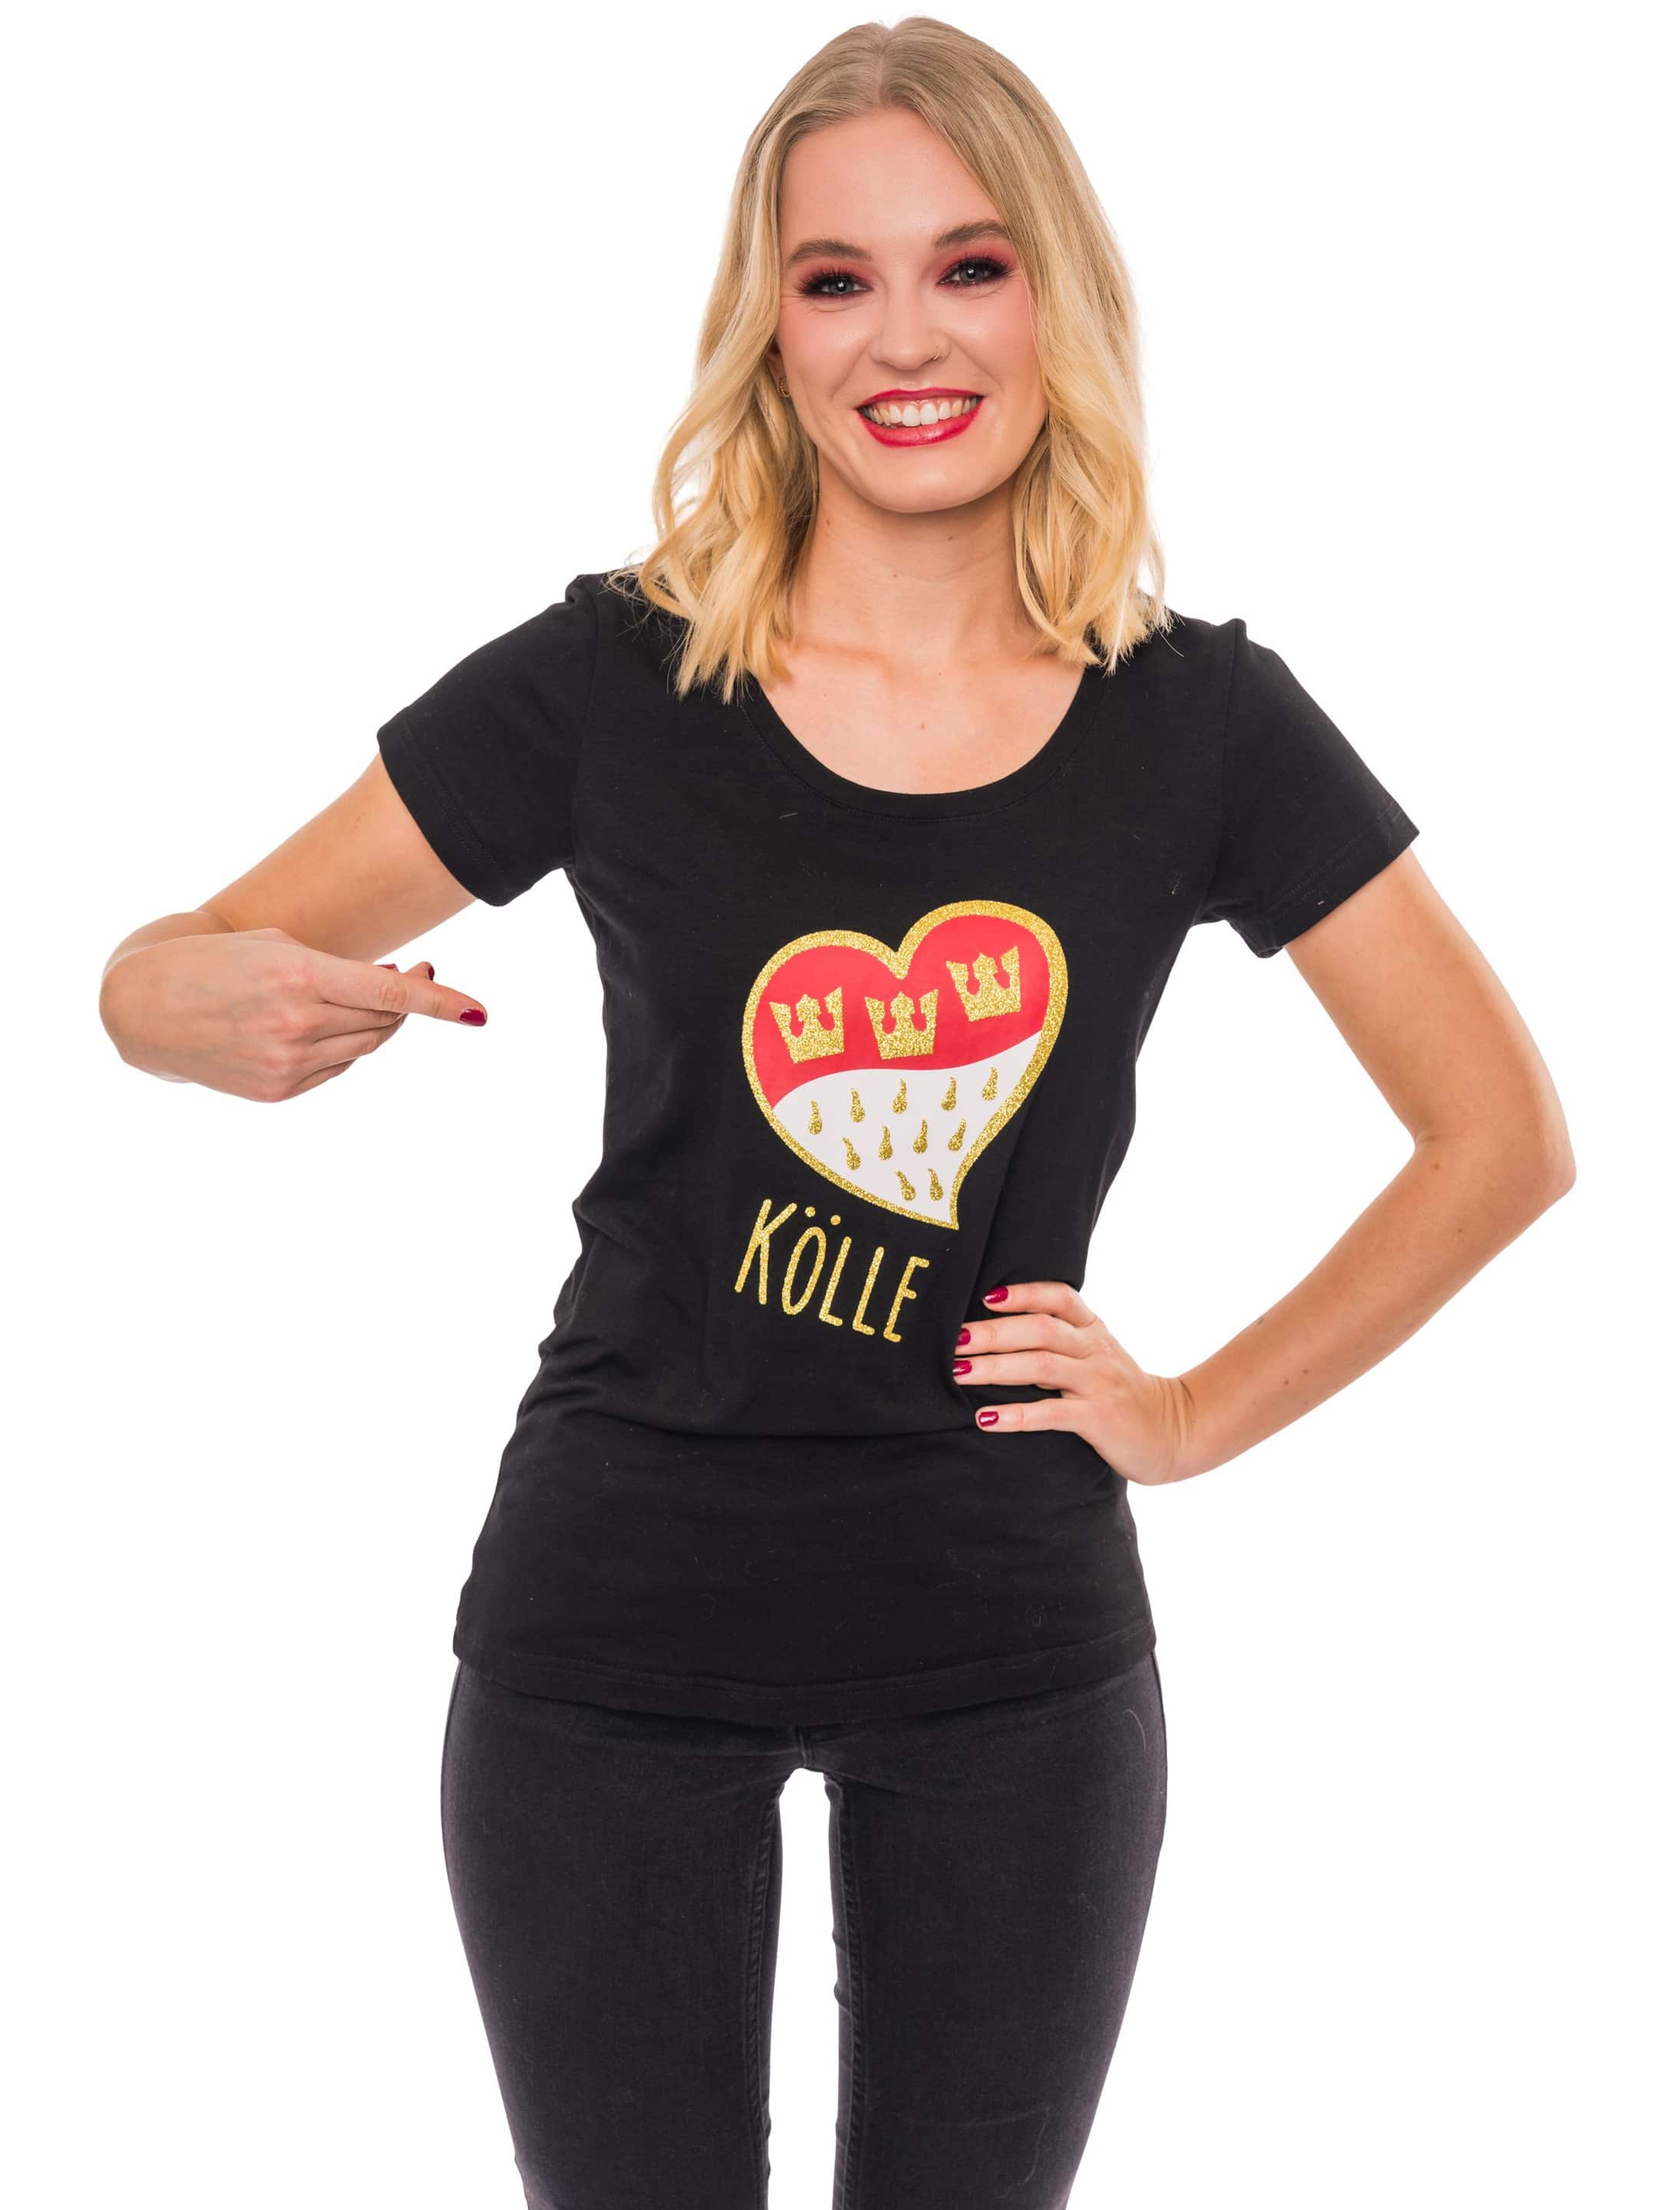 T-Shirt Kölle Herz gold XL